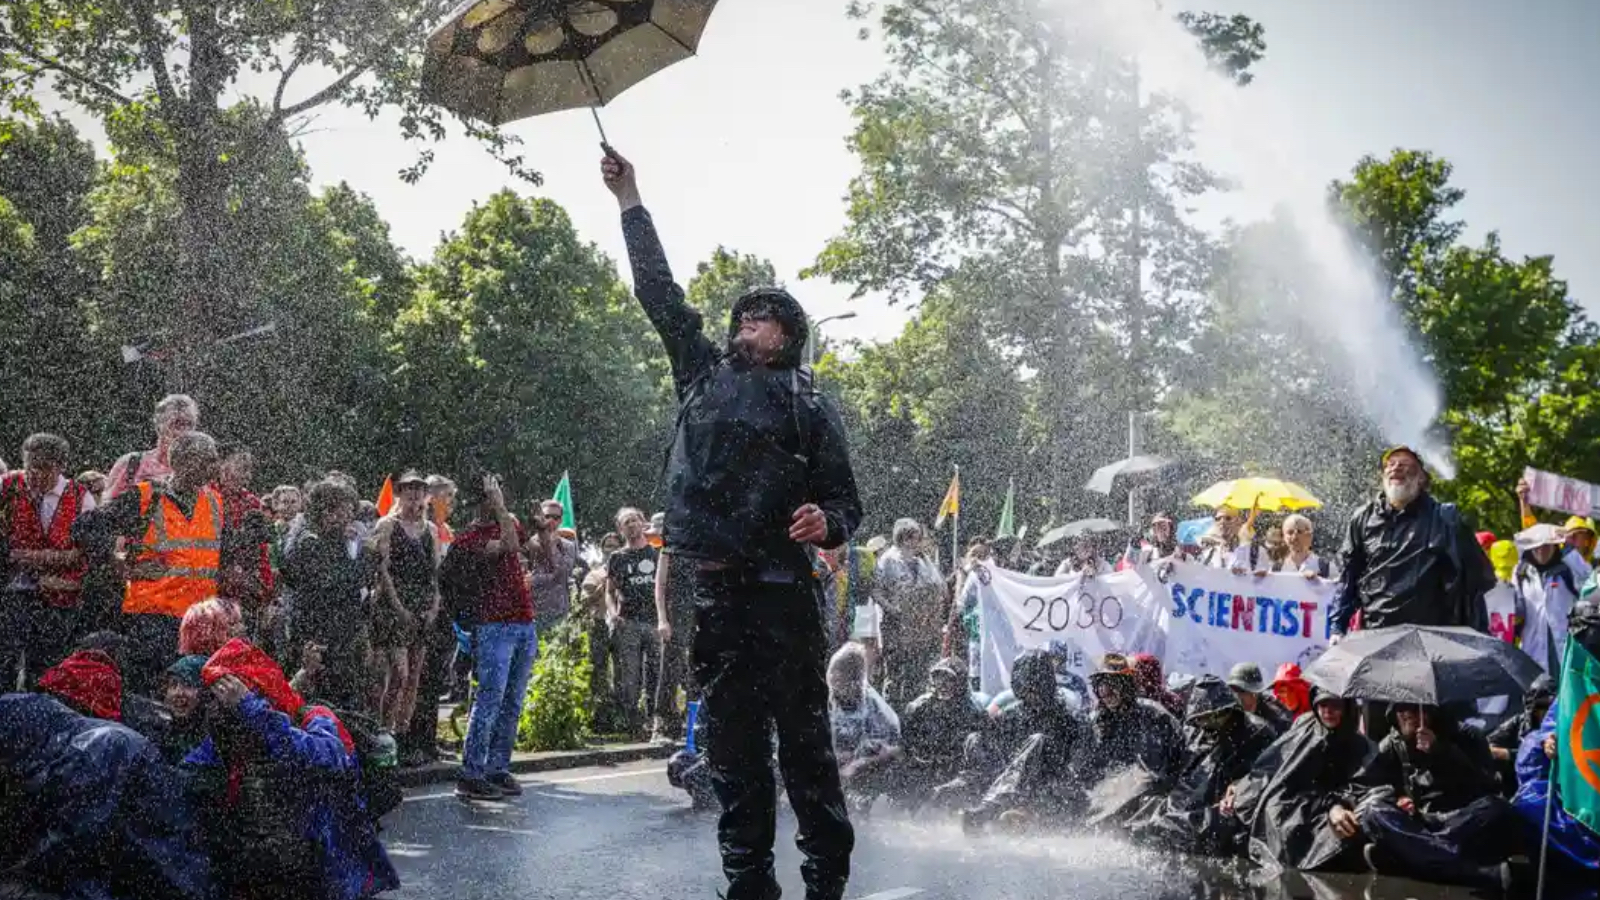 Hollanda’da iklim protestosu..  Game of Thrones oyuncusu da dahil 1500 kişi gözaltında